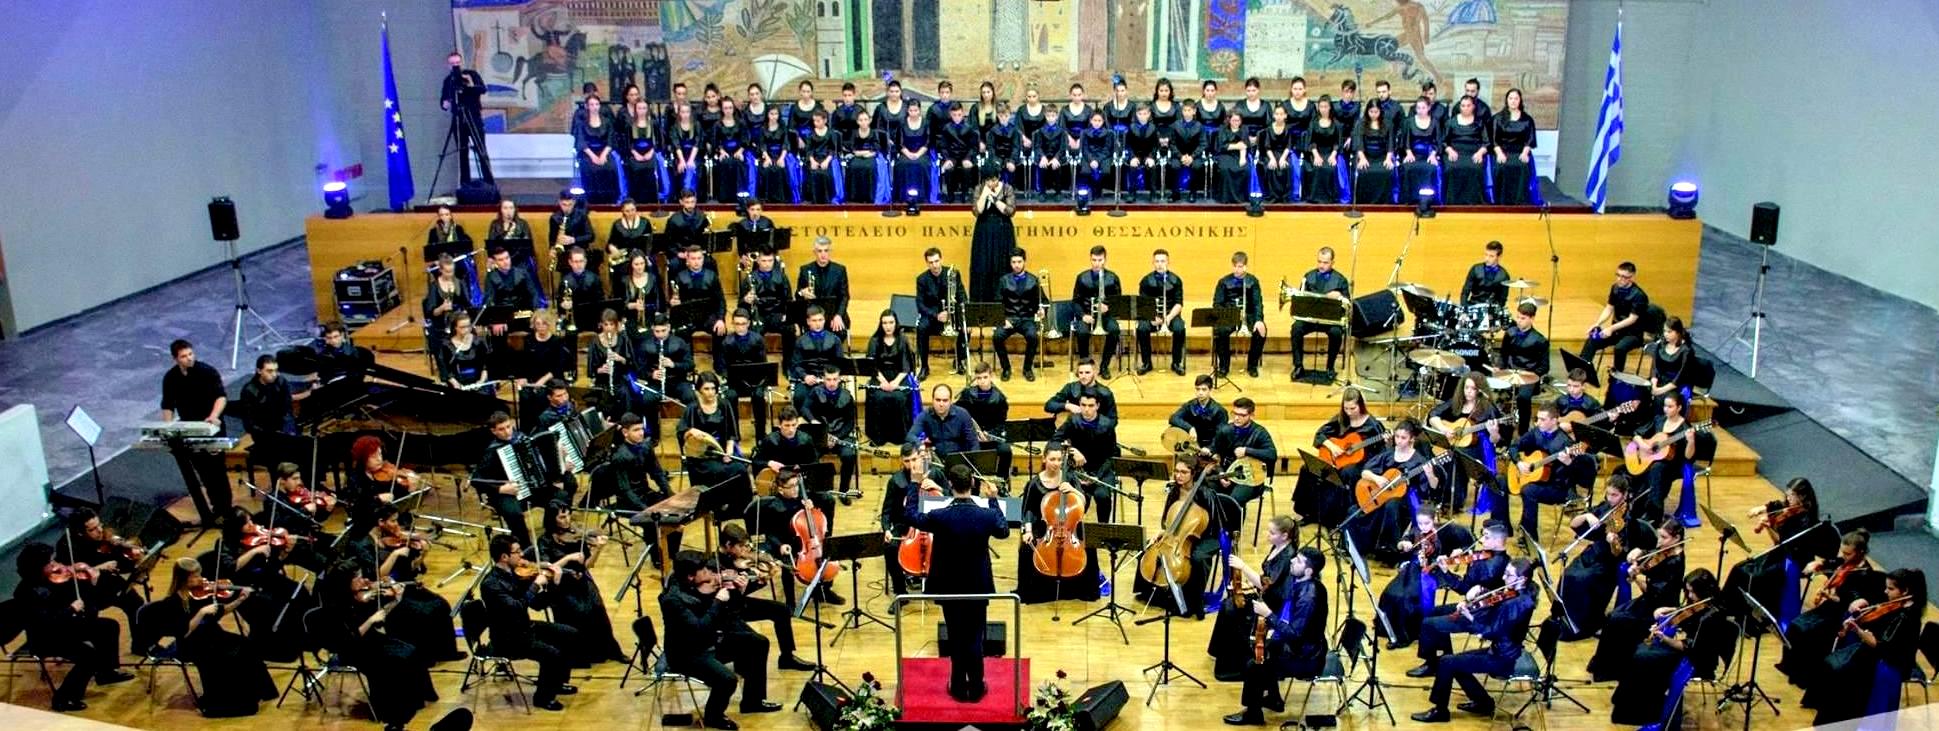 Ετήσια Ακρόαση Συμφωνικής Ορχήστρας Νέων Ελλάδος (Ορχήστρα-Χορωδία-Σολίστ) 2017